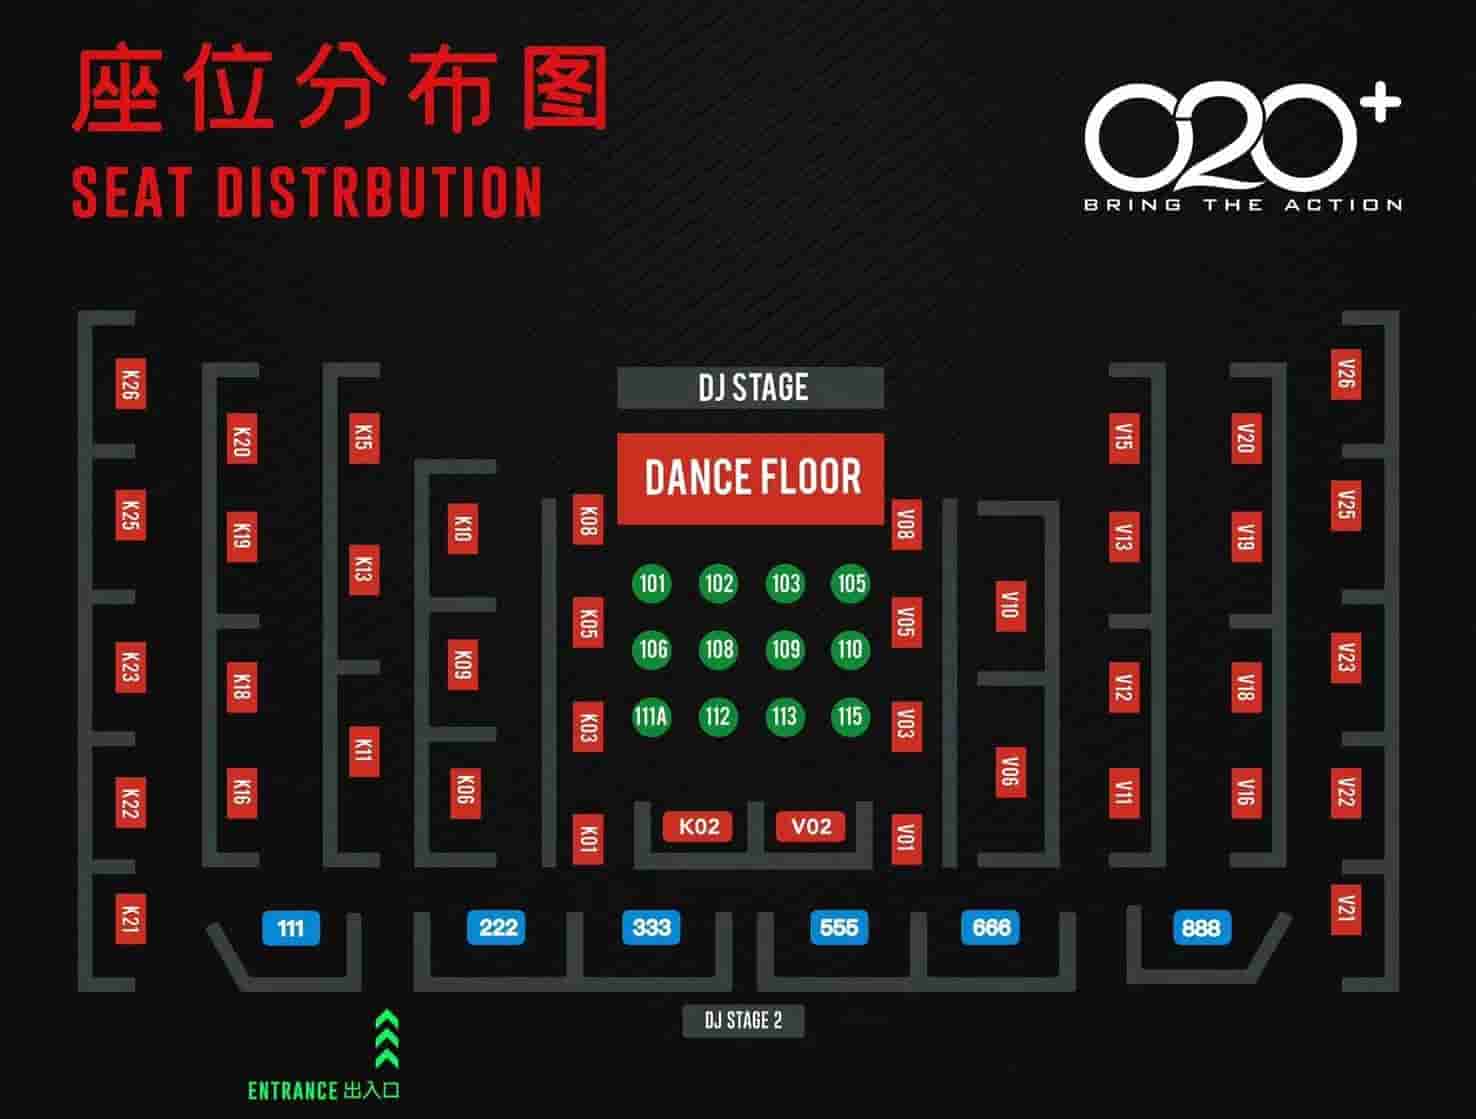 广州 o2o 酒吧座位分布图